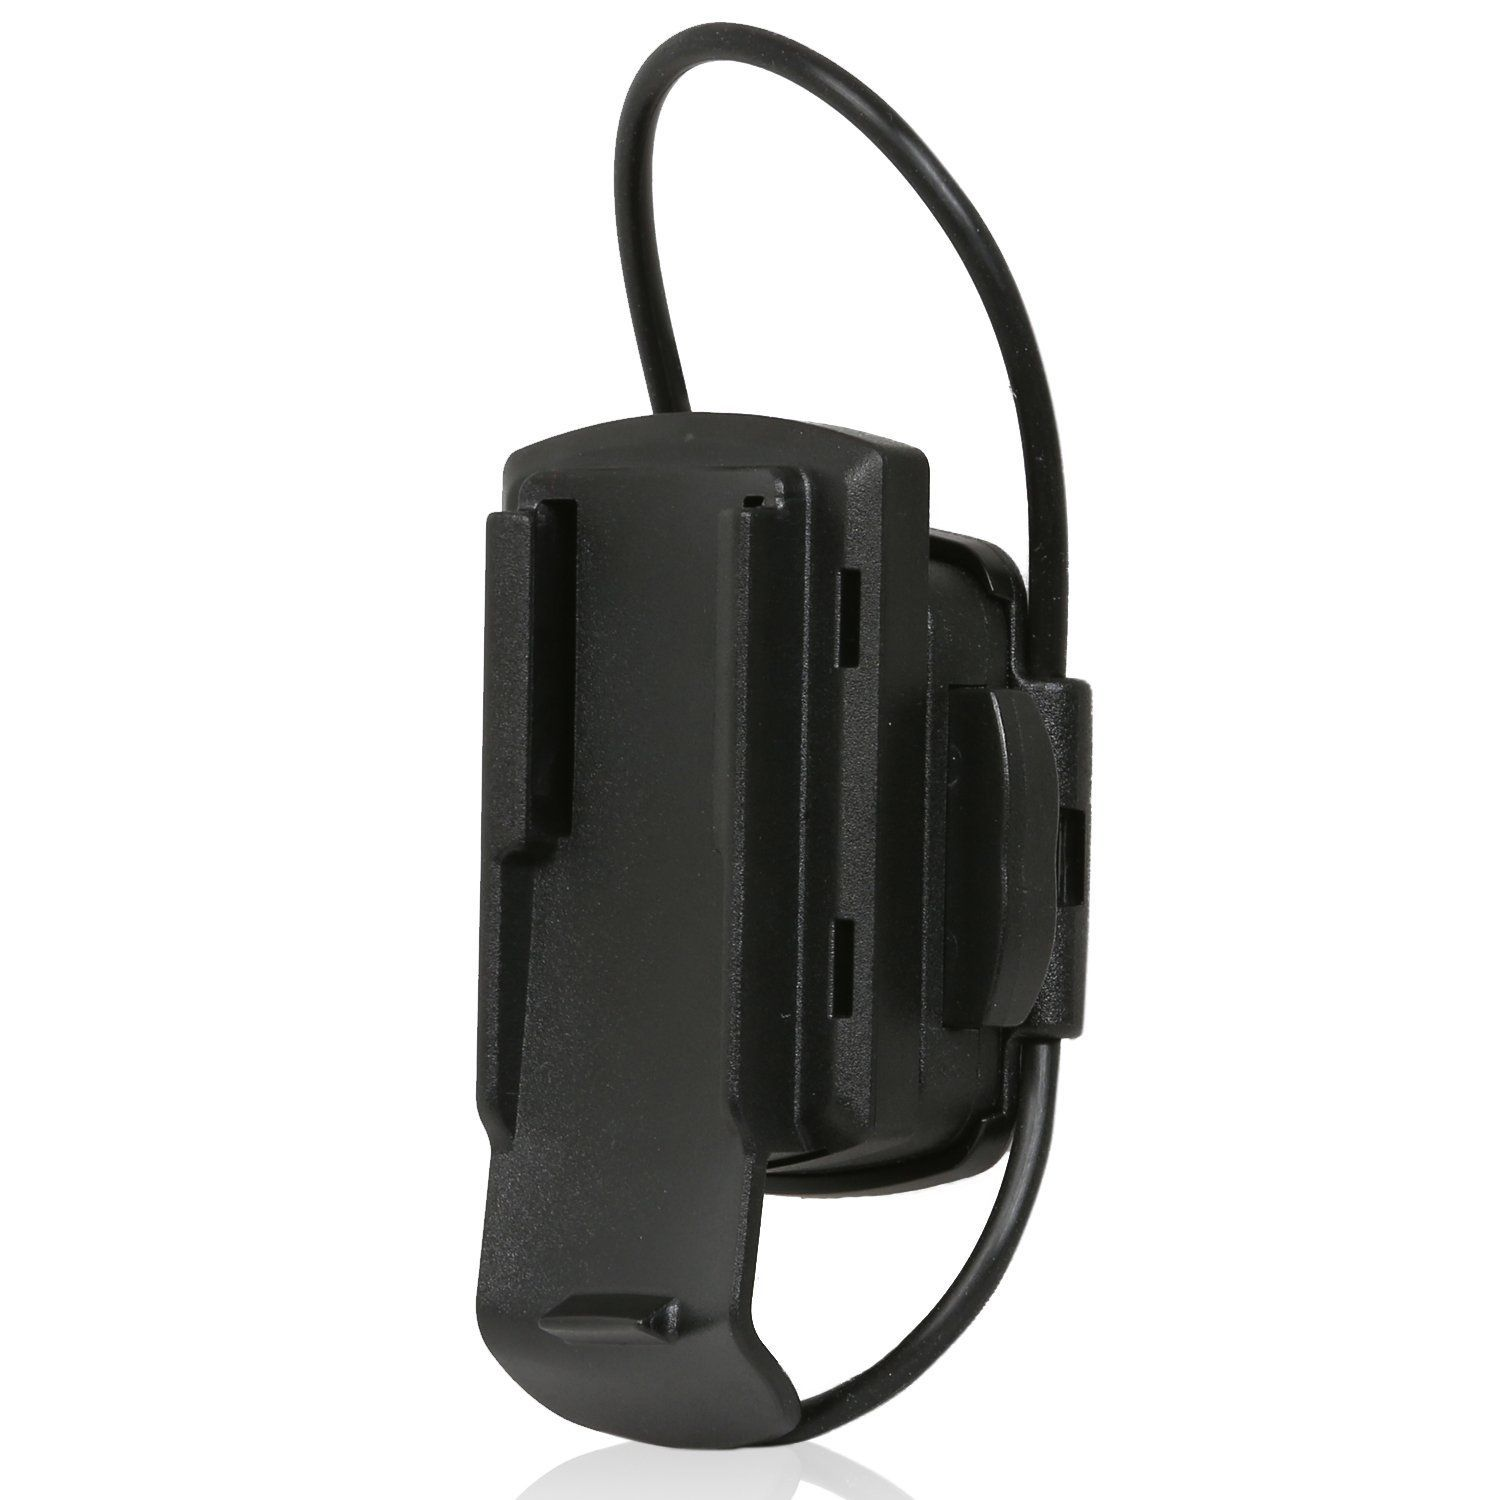 WICKED CHILI Fahrradhalter für Garmin Adapter, - Vorbau schwarz Lenker Kabelbinder Astro, für Fahrradhalterung, Dakota, Approach, Fahrrad- eTrex, GPSMAP Oregon, oder Lenker 22-32 mm, Ø mit passend